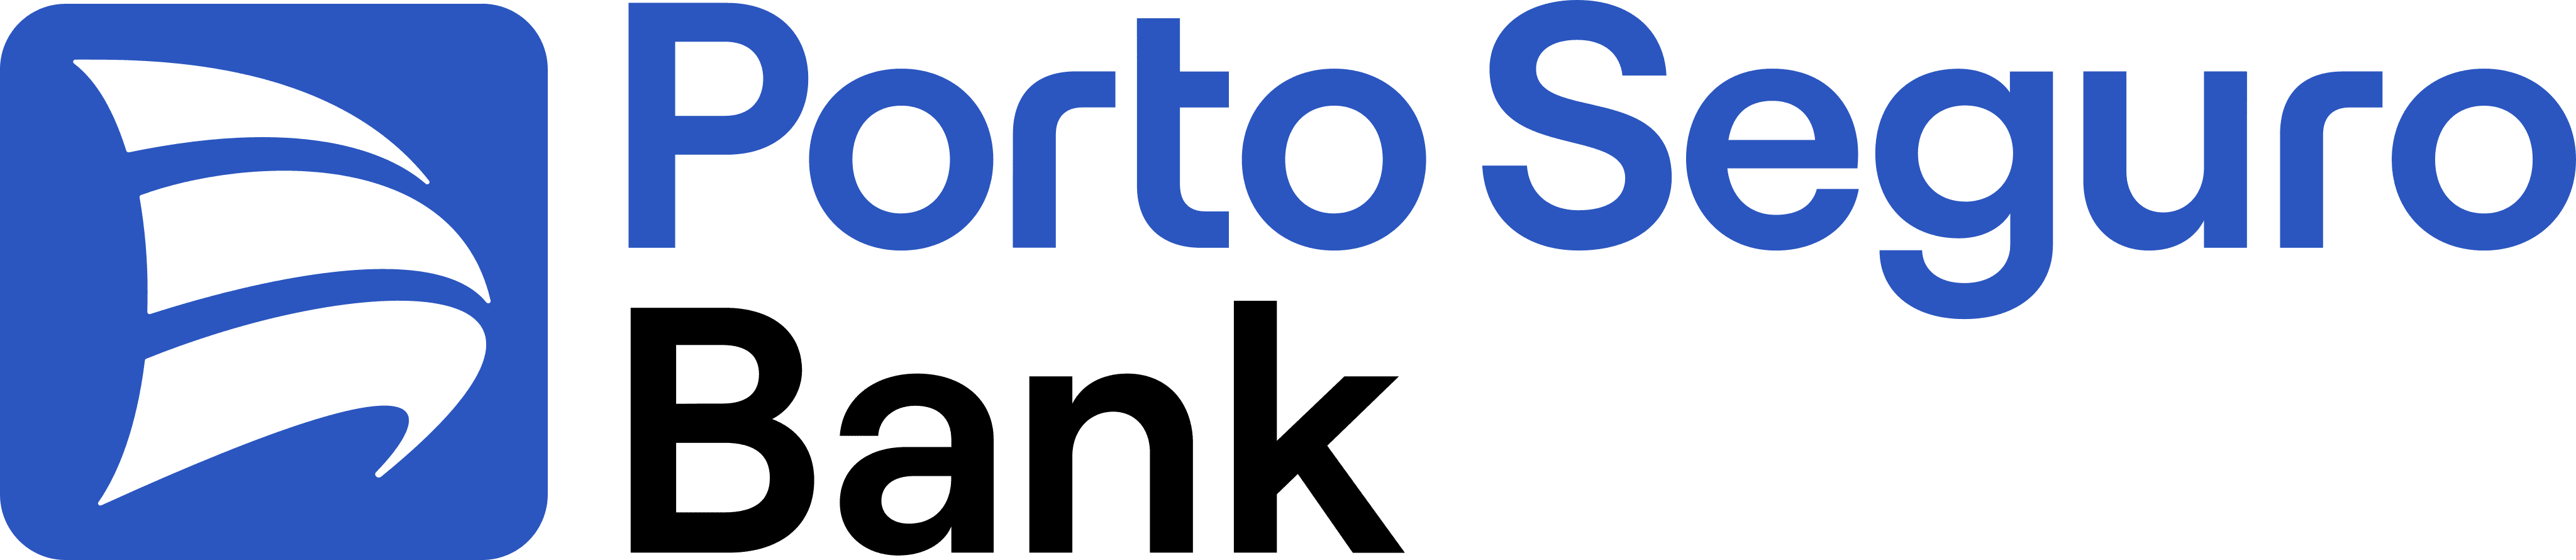 Empréstimo com garantia de veículo Porto Bank